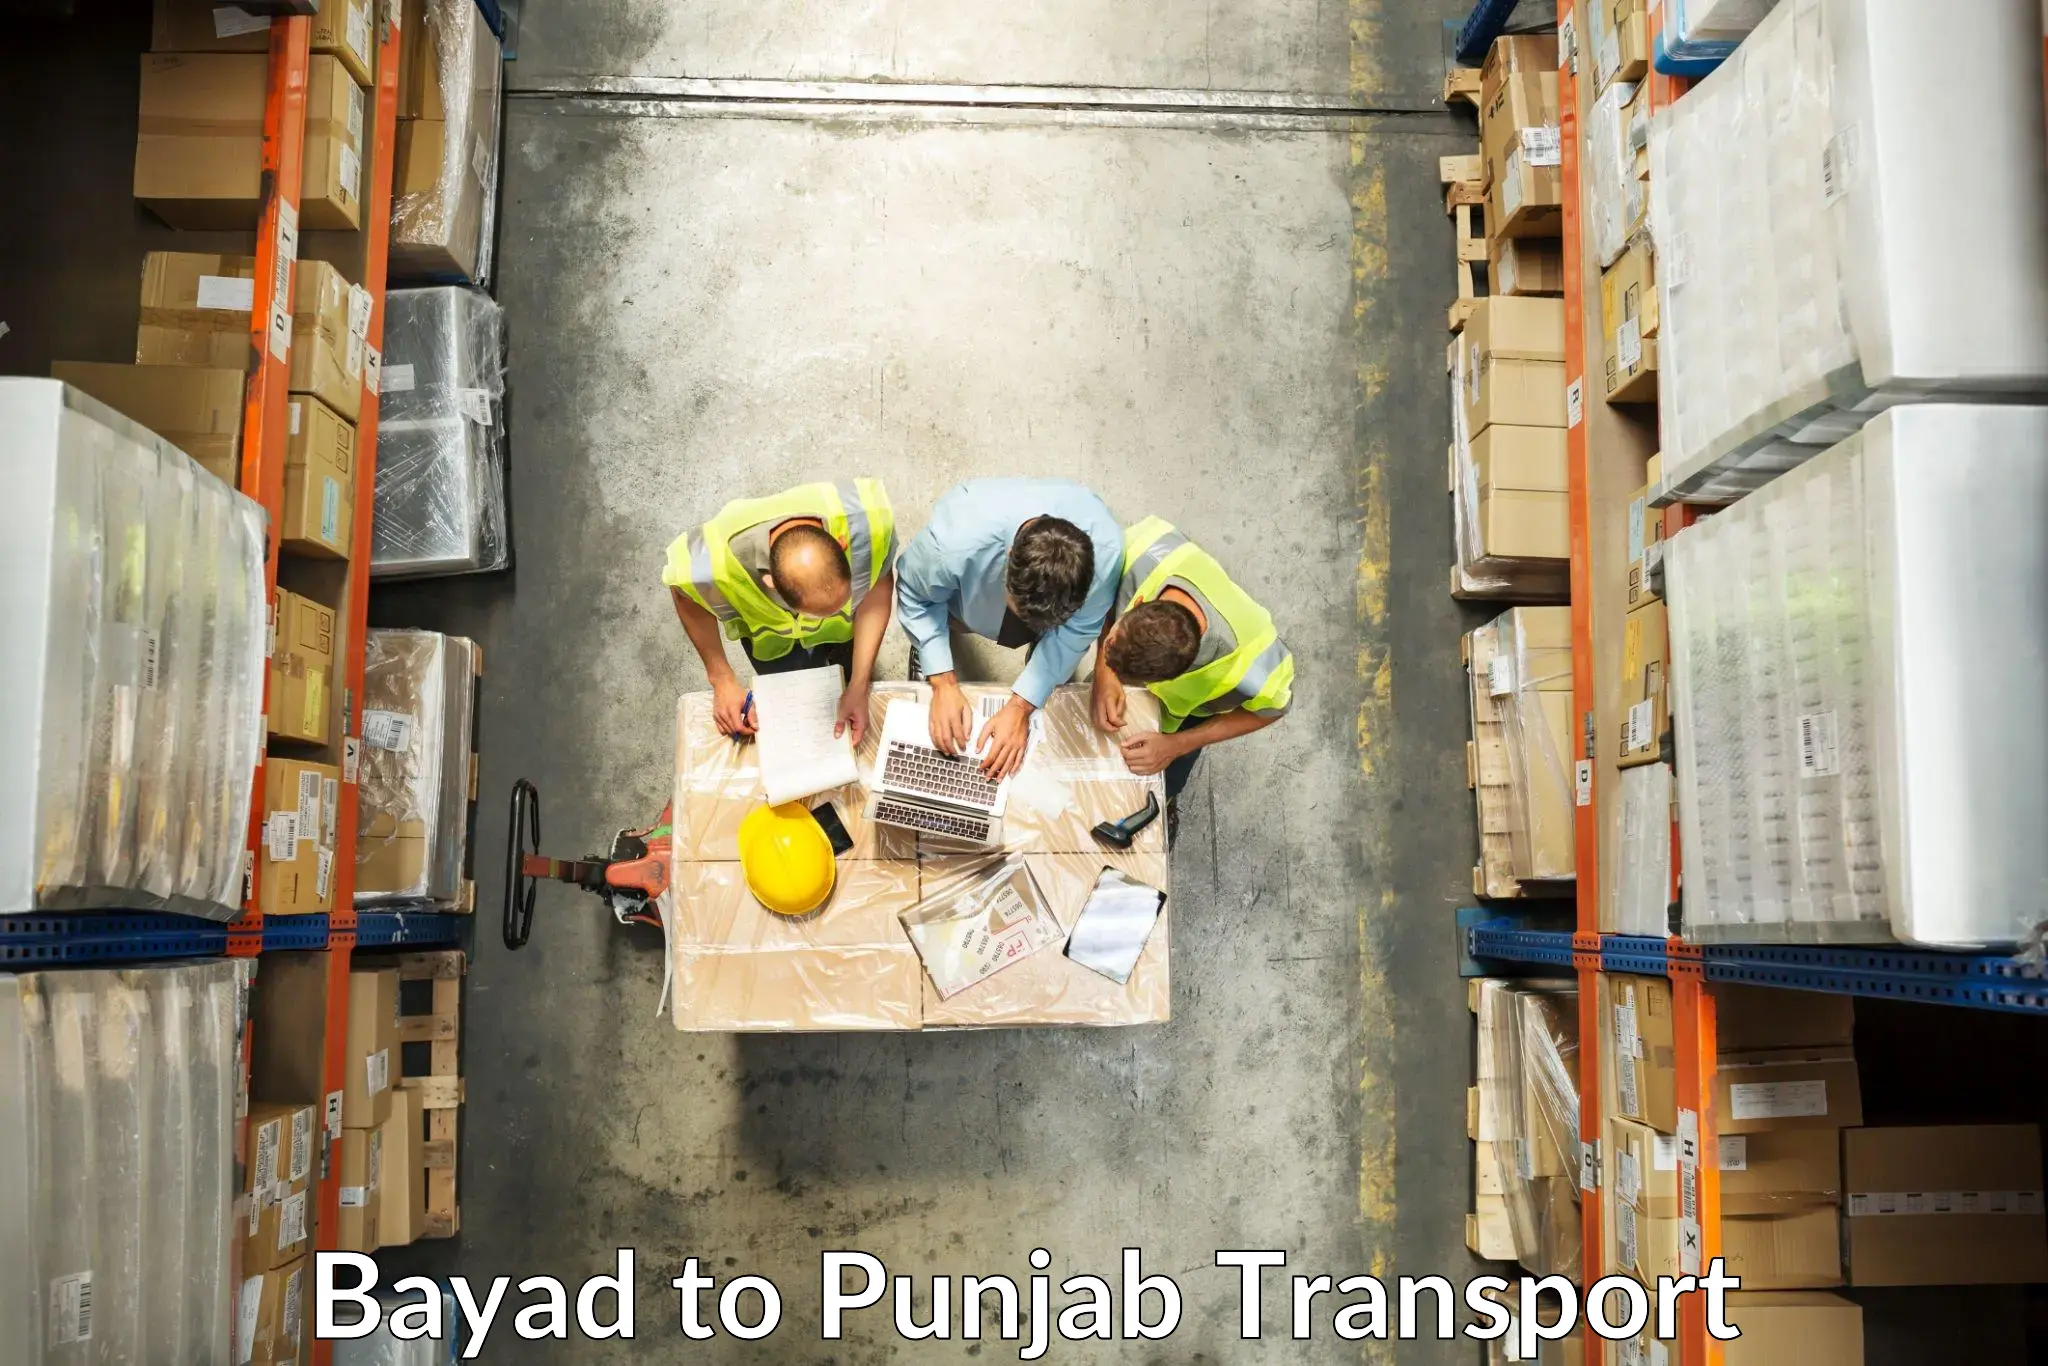 Express transport services Bayad to Jalandhar